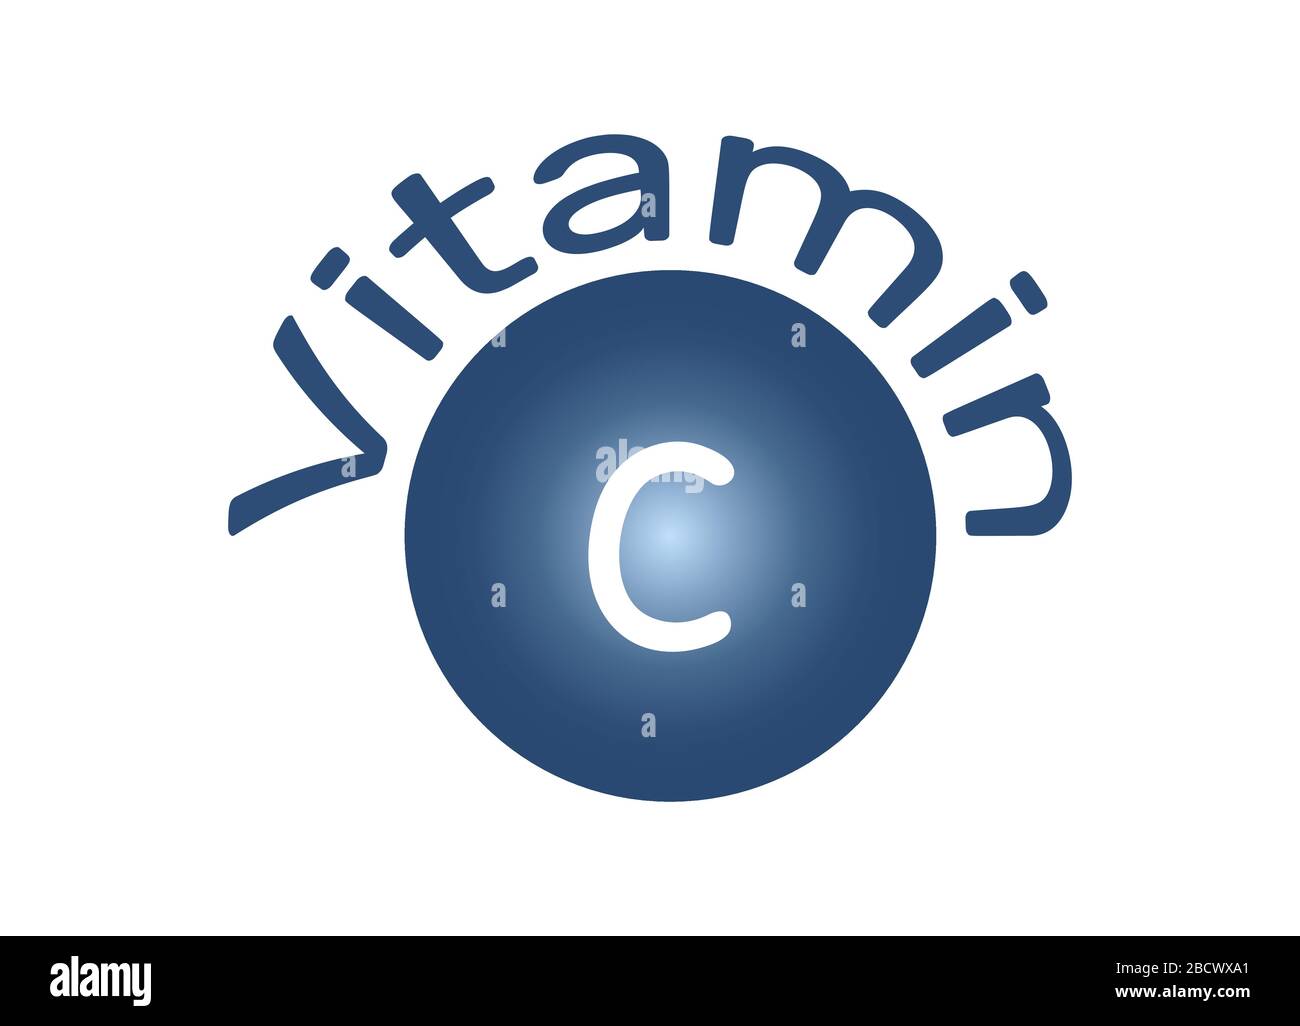 Vitamin C, ascorbic acid, food additive E300. Logo, icon. Vector illustration Stock Vector